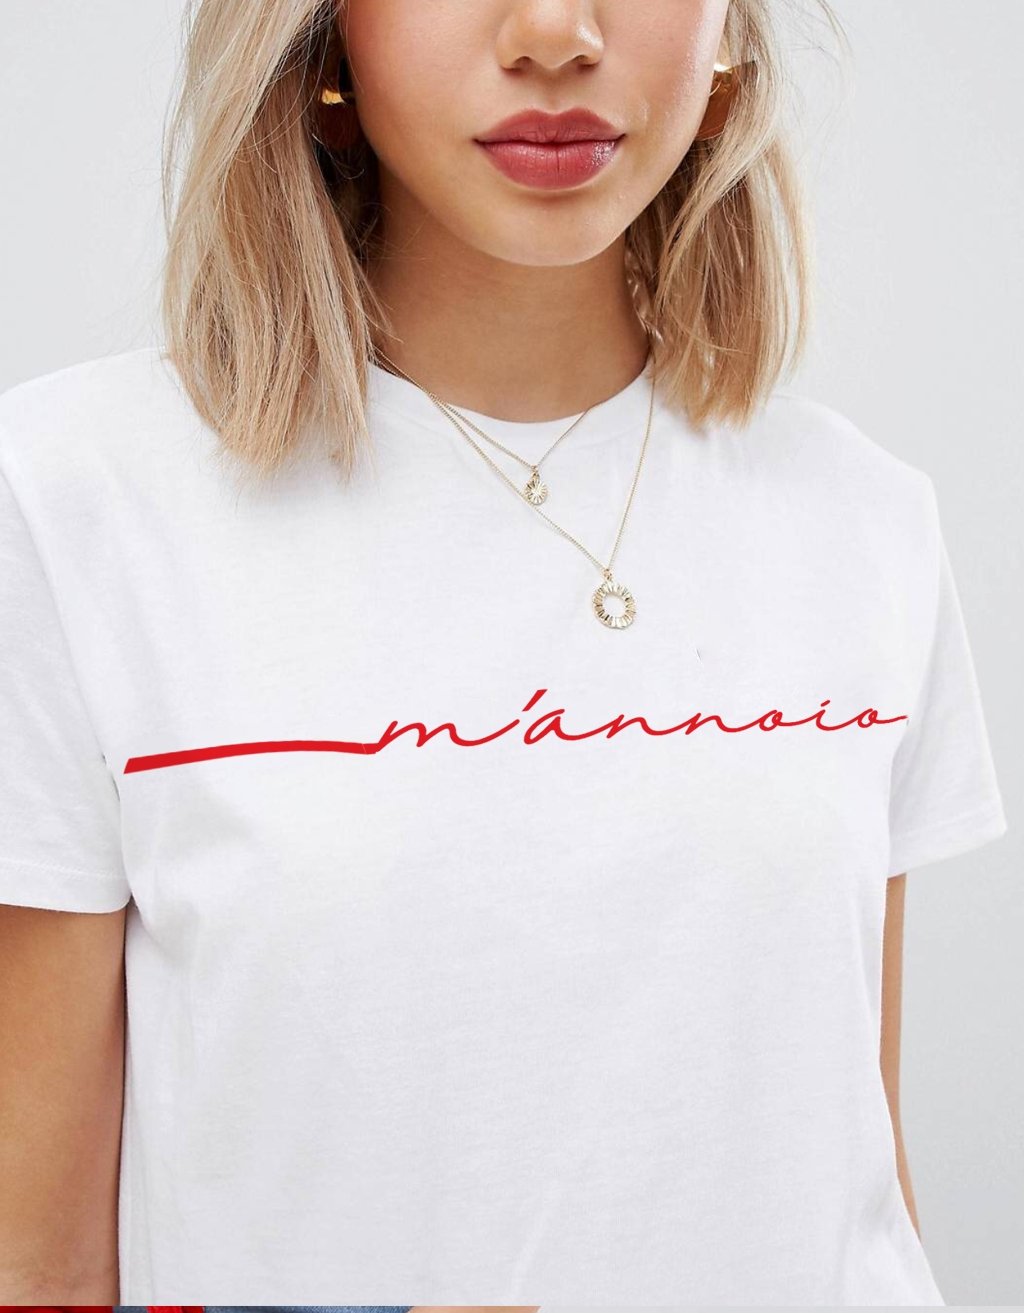 T-Shirt Donna "M'annoio" - dandalo